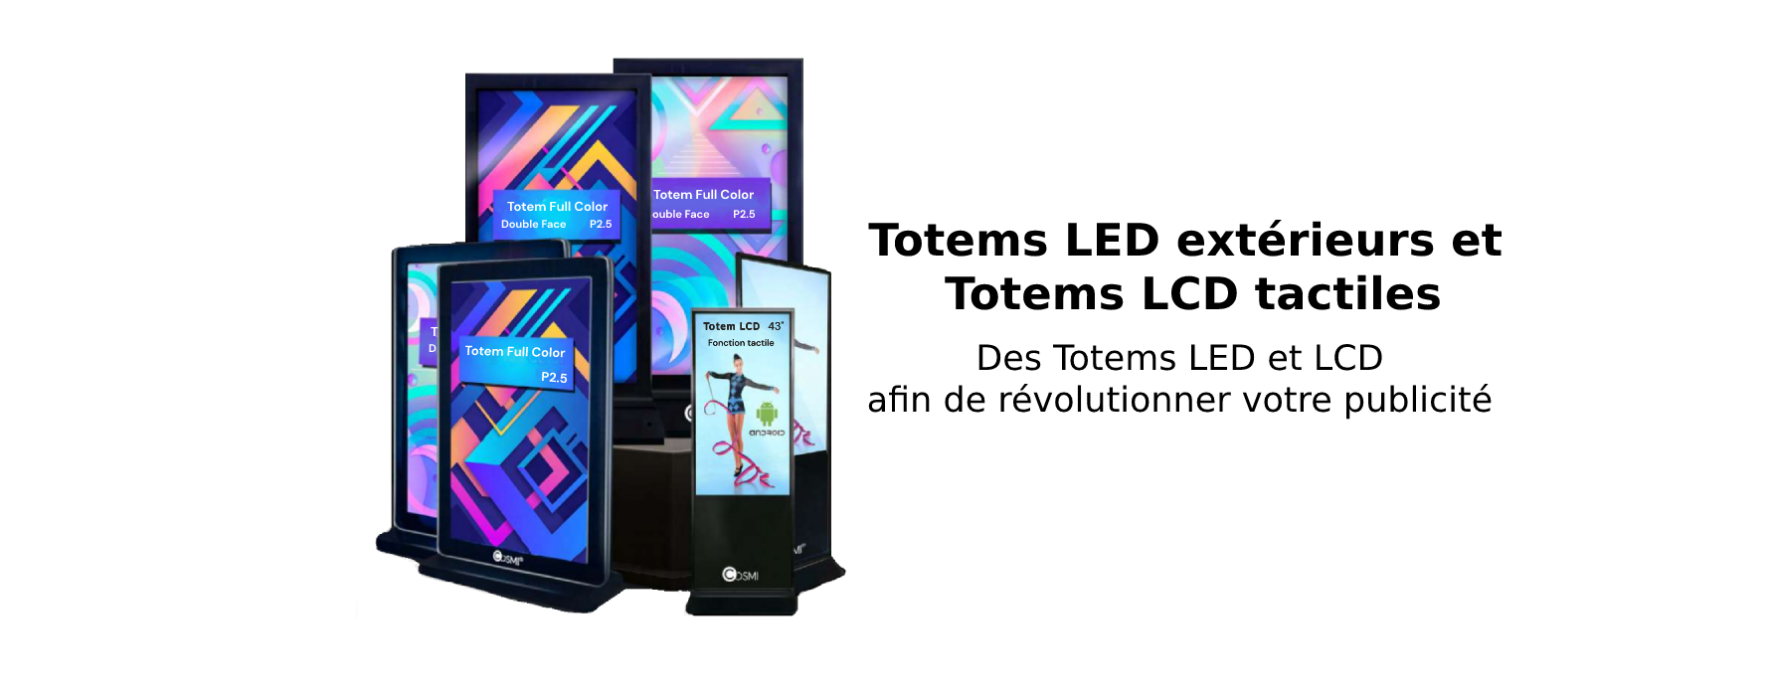 Ensemble de totems LED extérieurs et Totems LCD tactiles. Ces totems LED et LCD permettent un renouveau pour votre publicité.